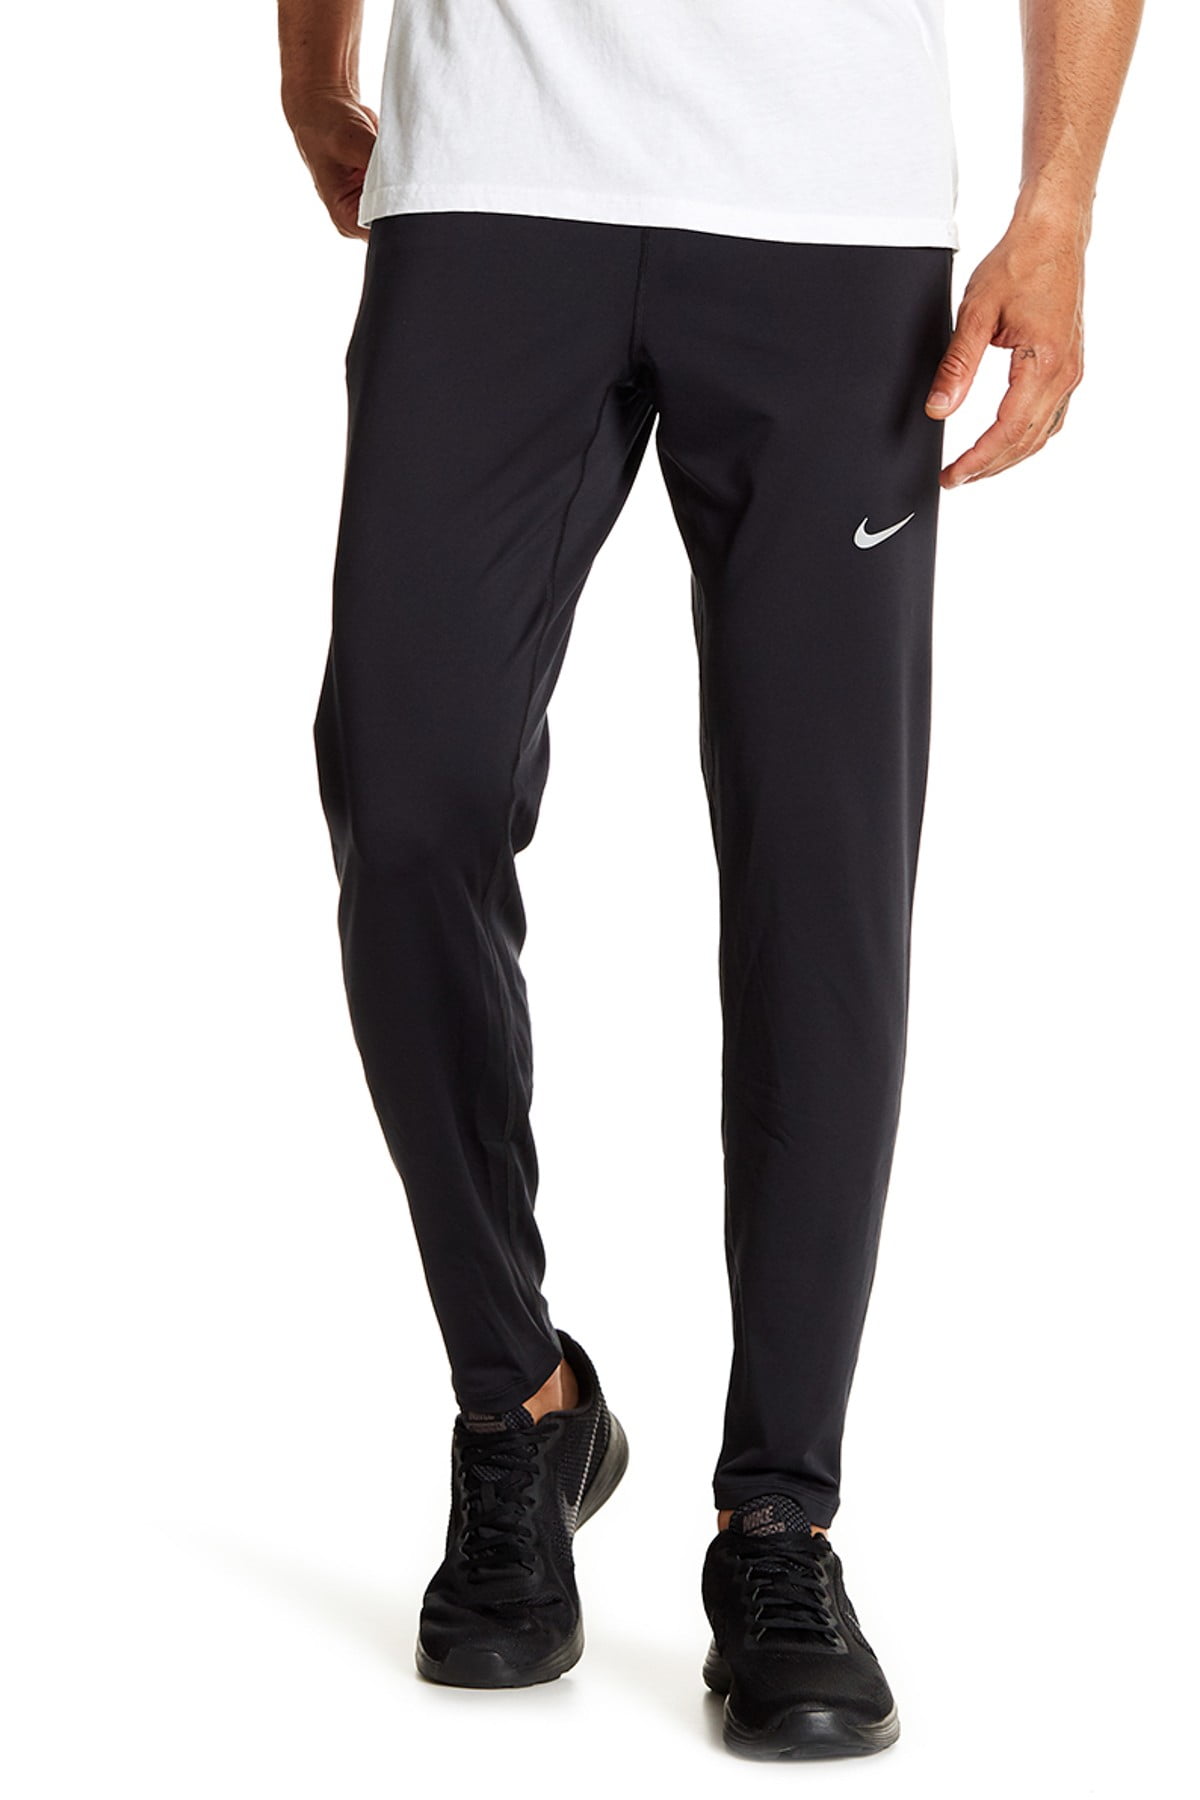 Nike - Mens Activewear Bottoms Large Running Sweat Pants L - Walmart ...